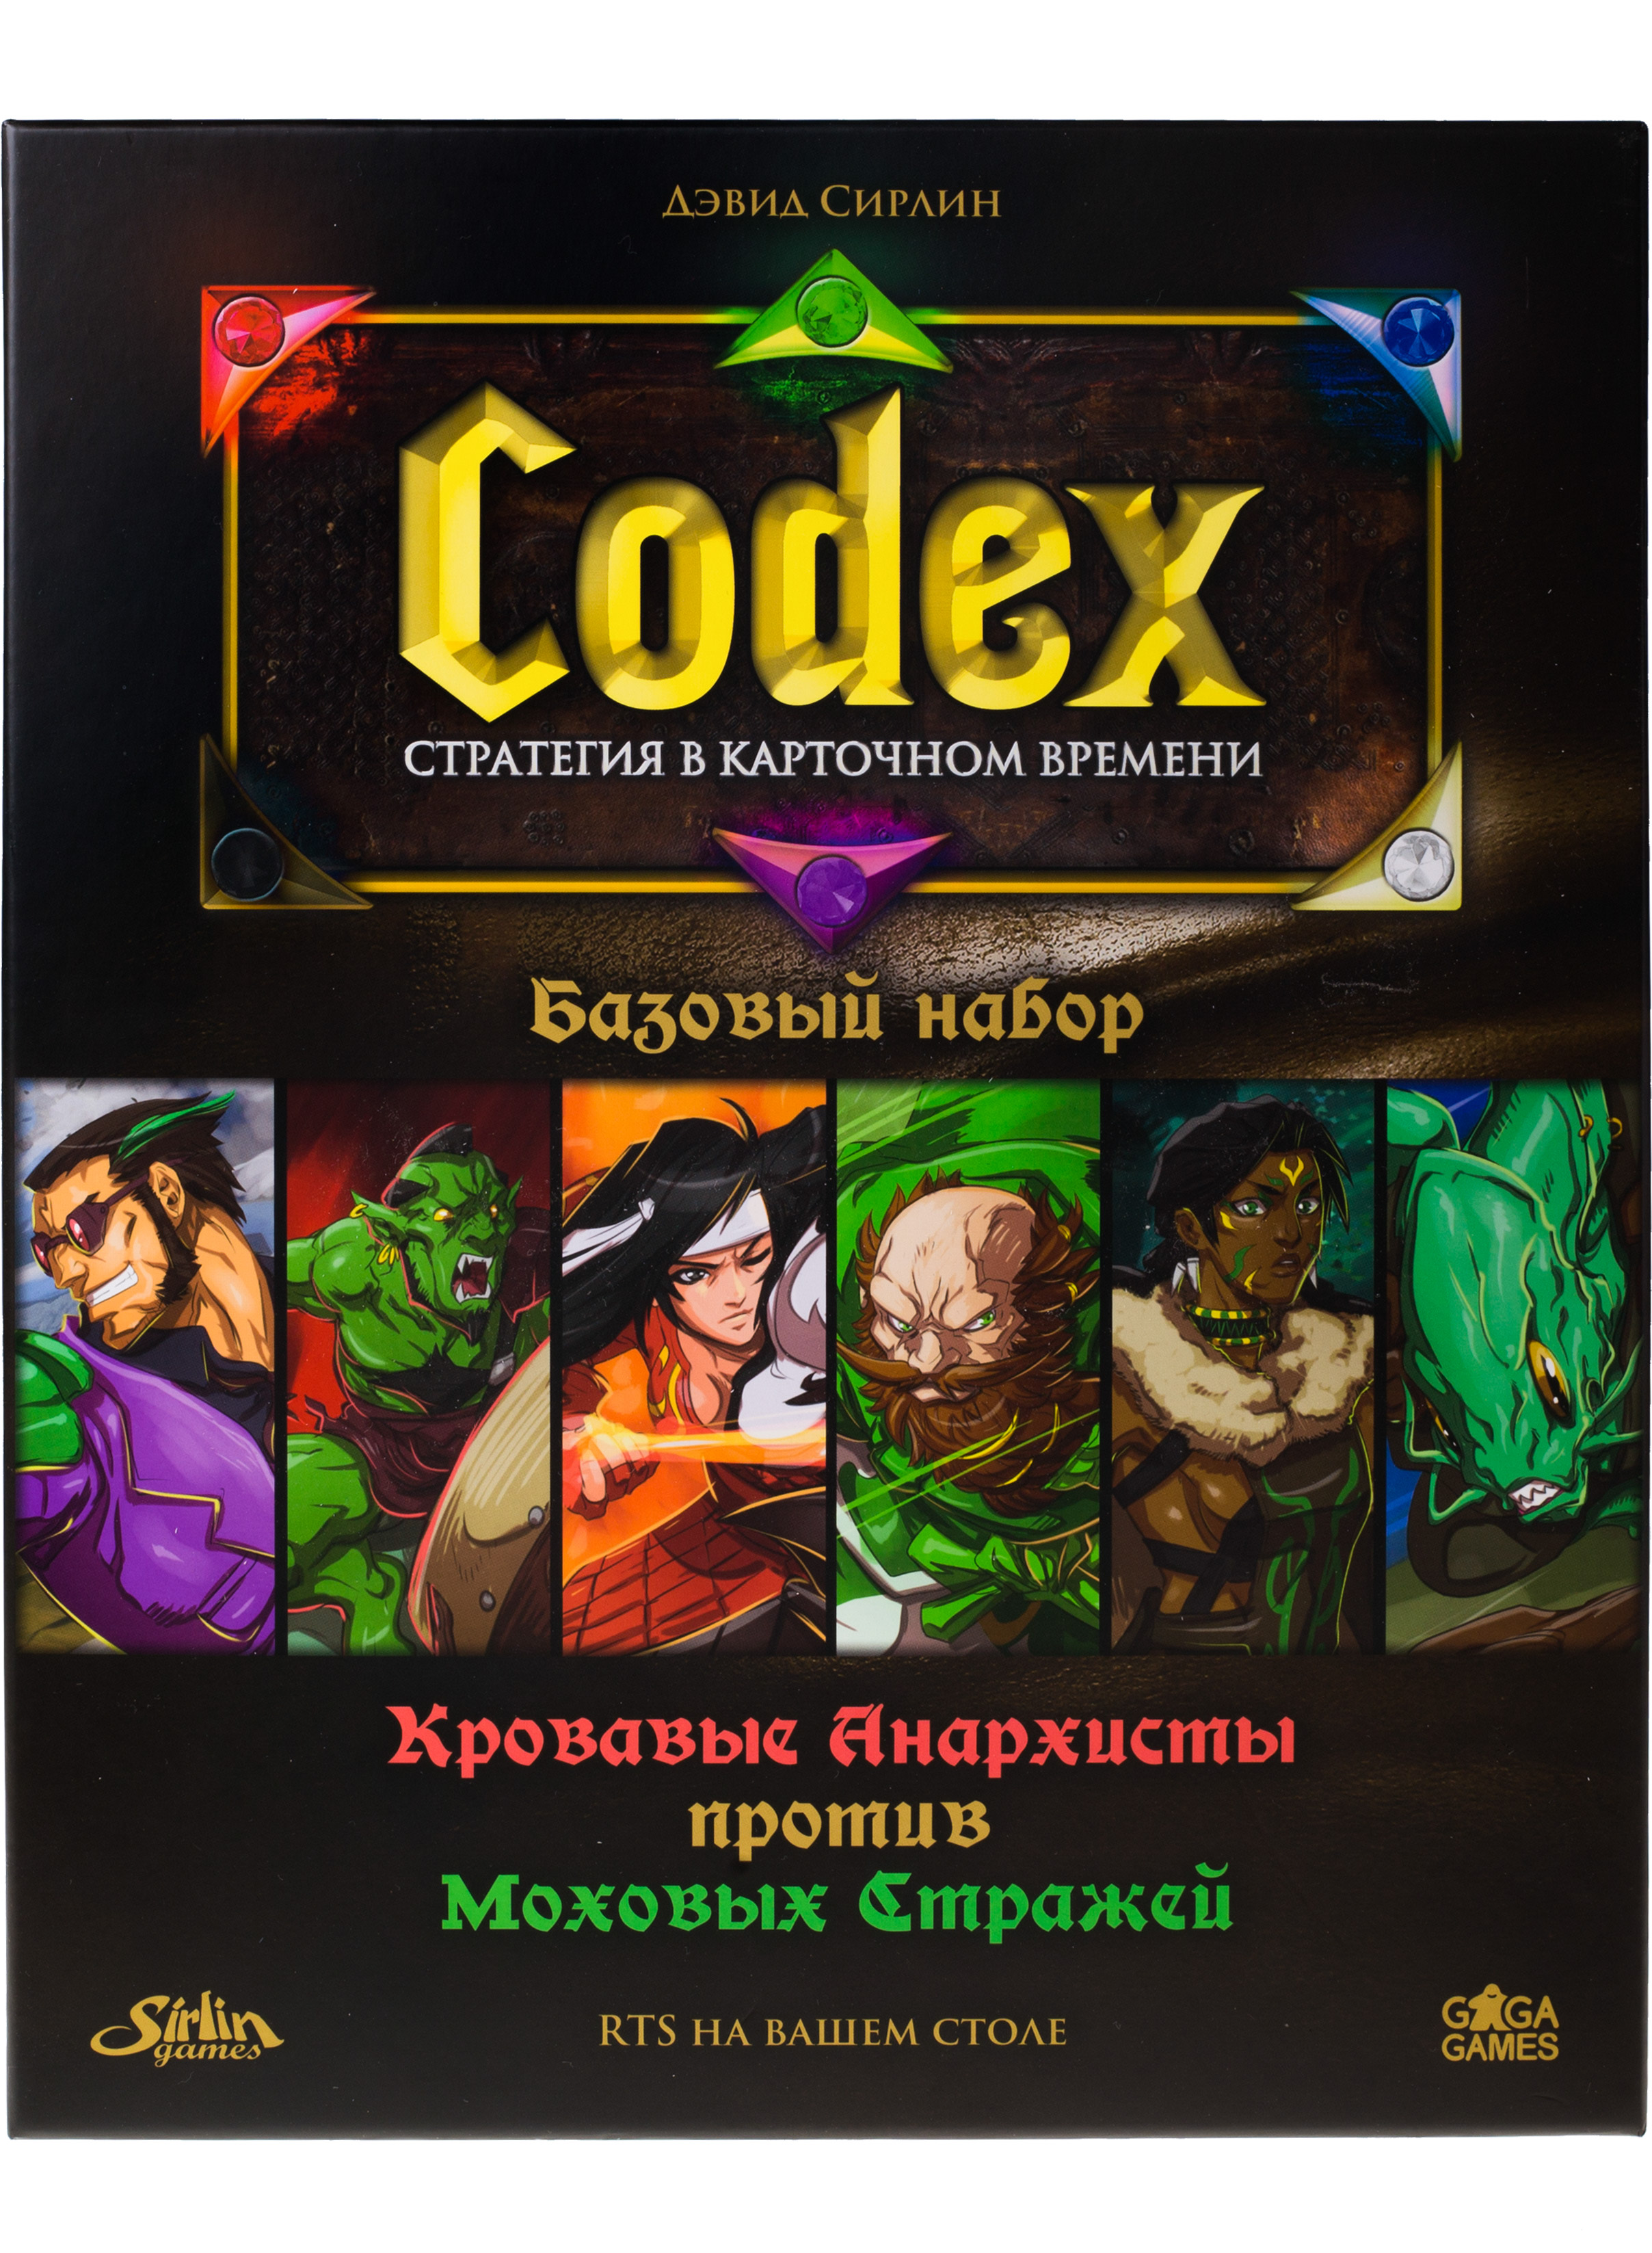 Карточная игра Gaga Games Codex базовый набор, на русском игра мультидиск street hit премиум maxi бадминтон фрисби 40 см оранжево голубой